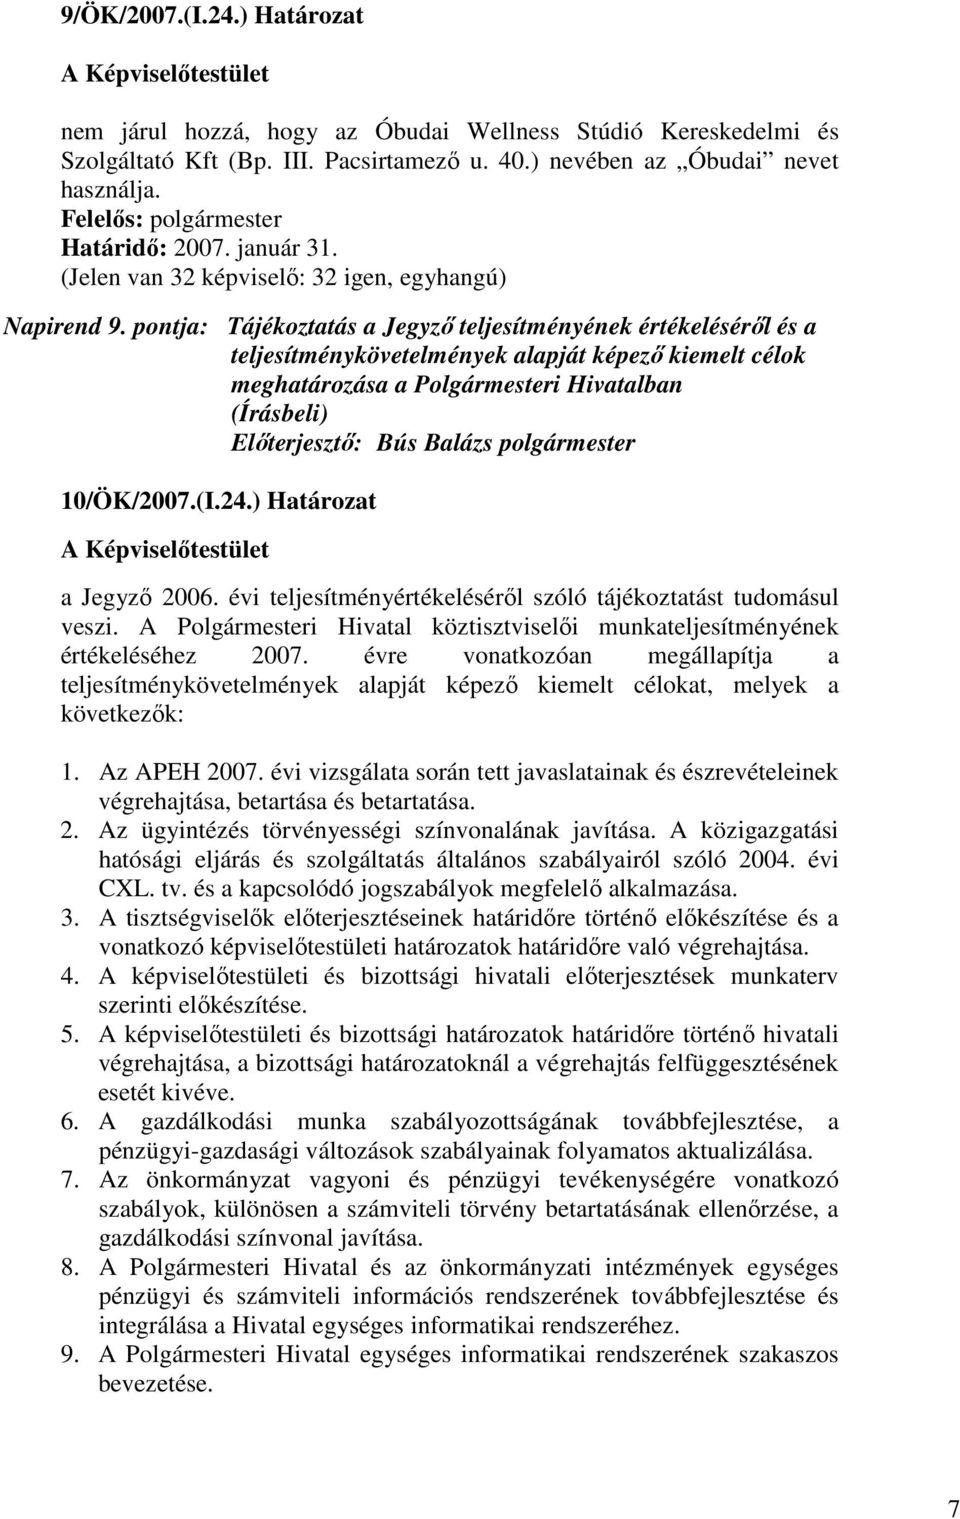 pontja: Tájékoztatás a Jegyzı teljesítményének értékelésérıl és a teljesítménykövetelmények alapját képezı kiemelt célok meghatározása a Polgármesteri Hivatalban 10/ÖK/2007.(I.24.